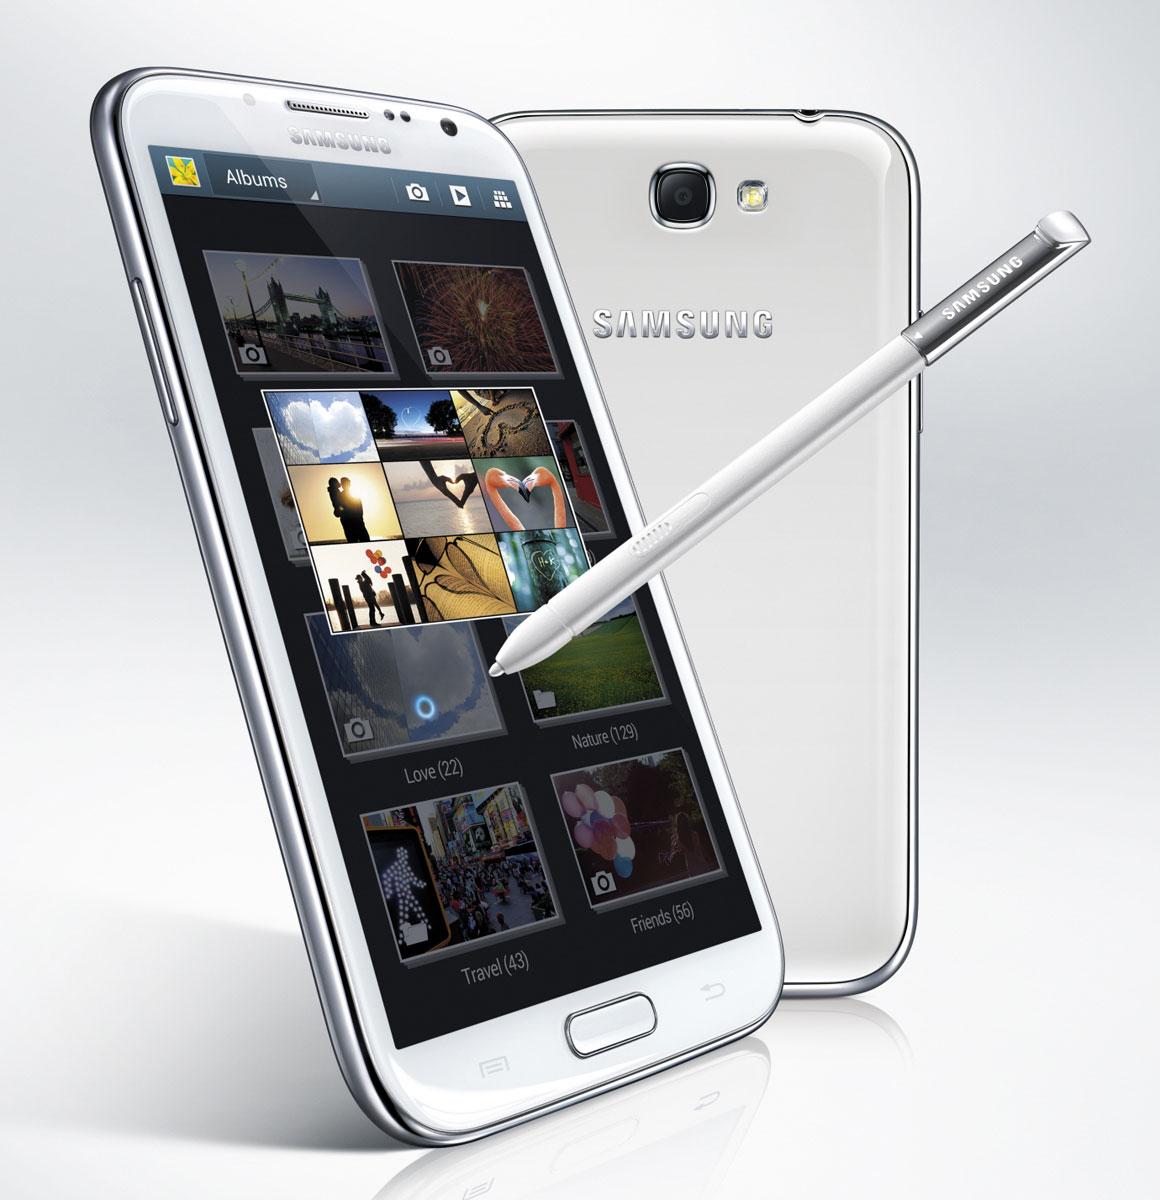 Samsung Galaxy Note 2 en color blanco con puntero táctil